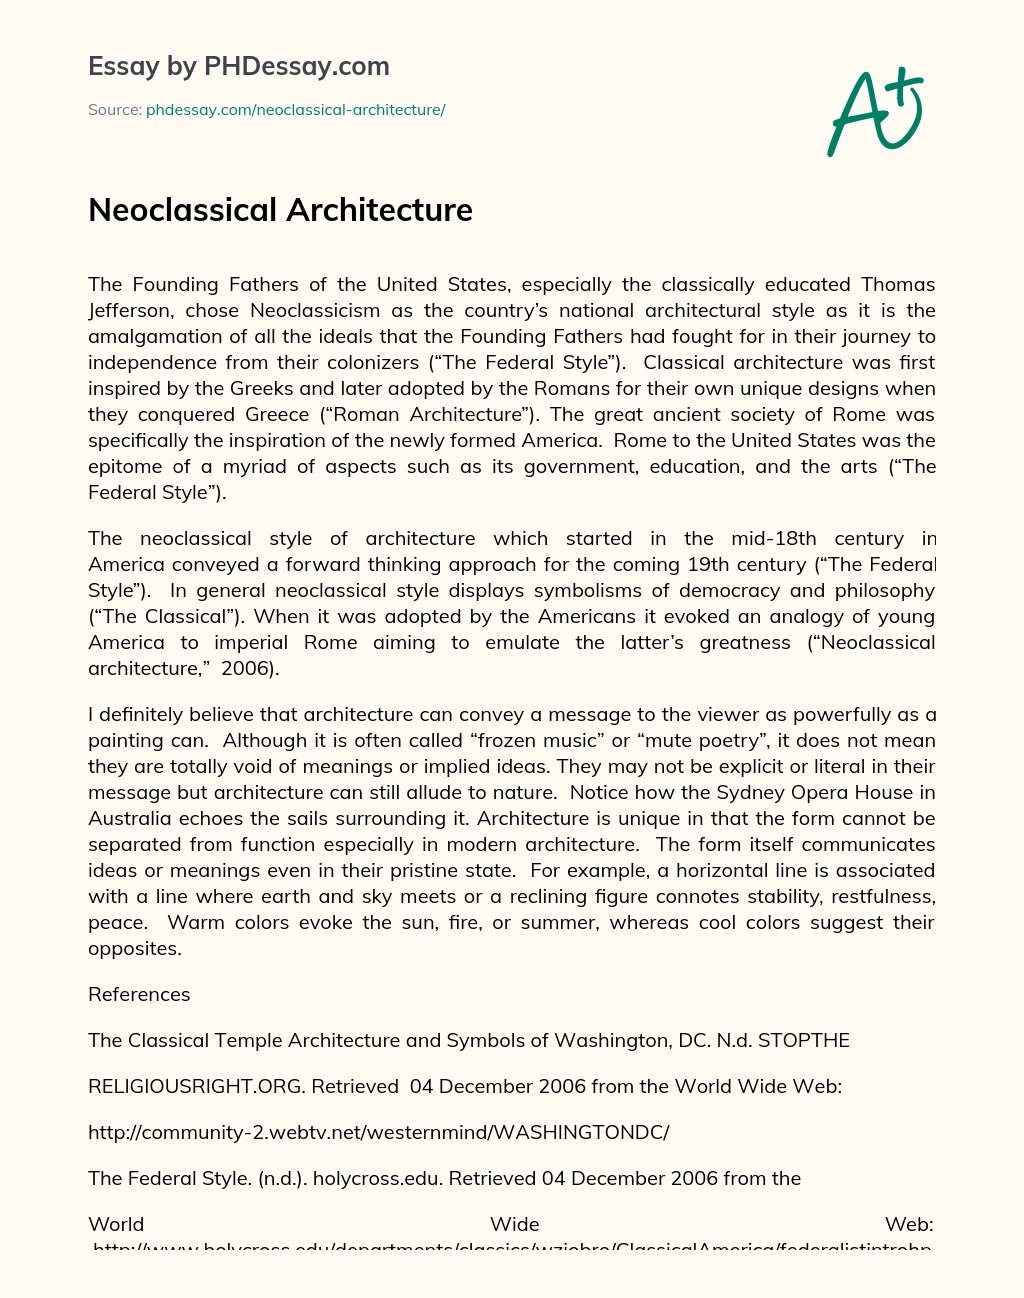 Neoclassical Architecture essay